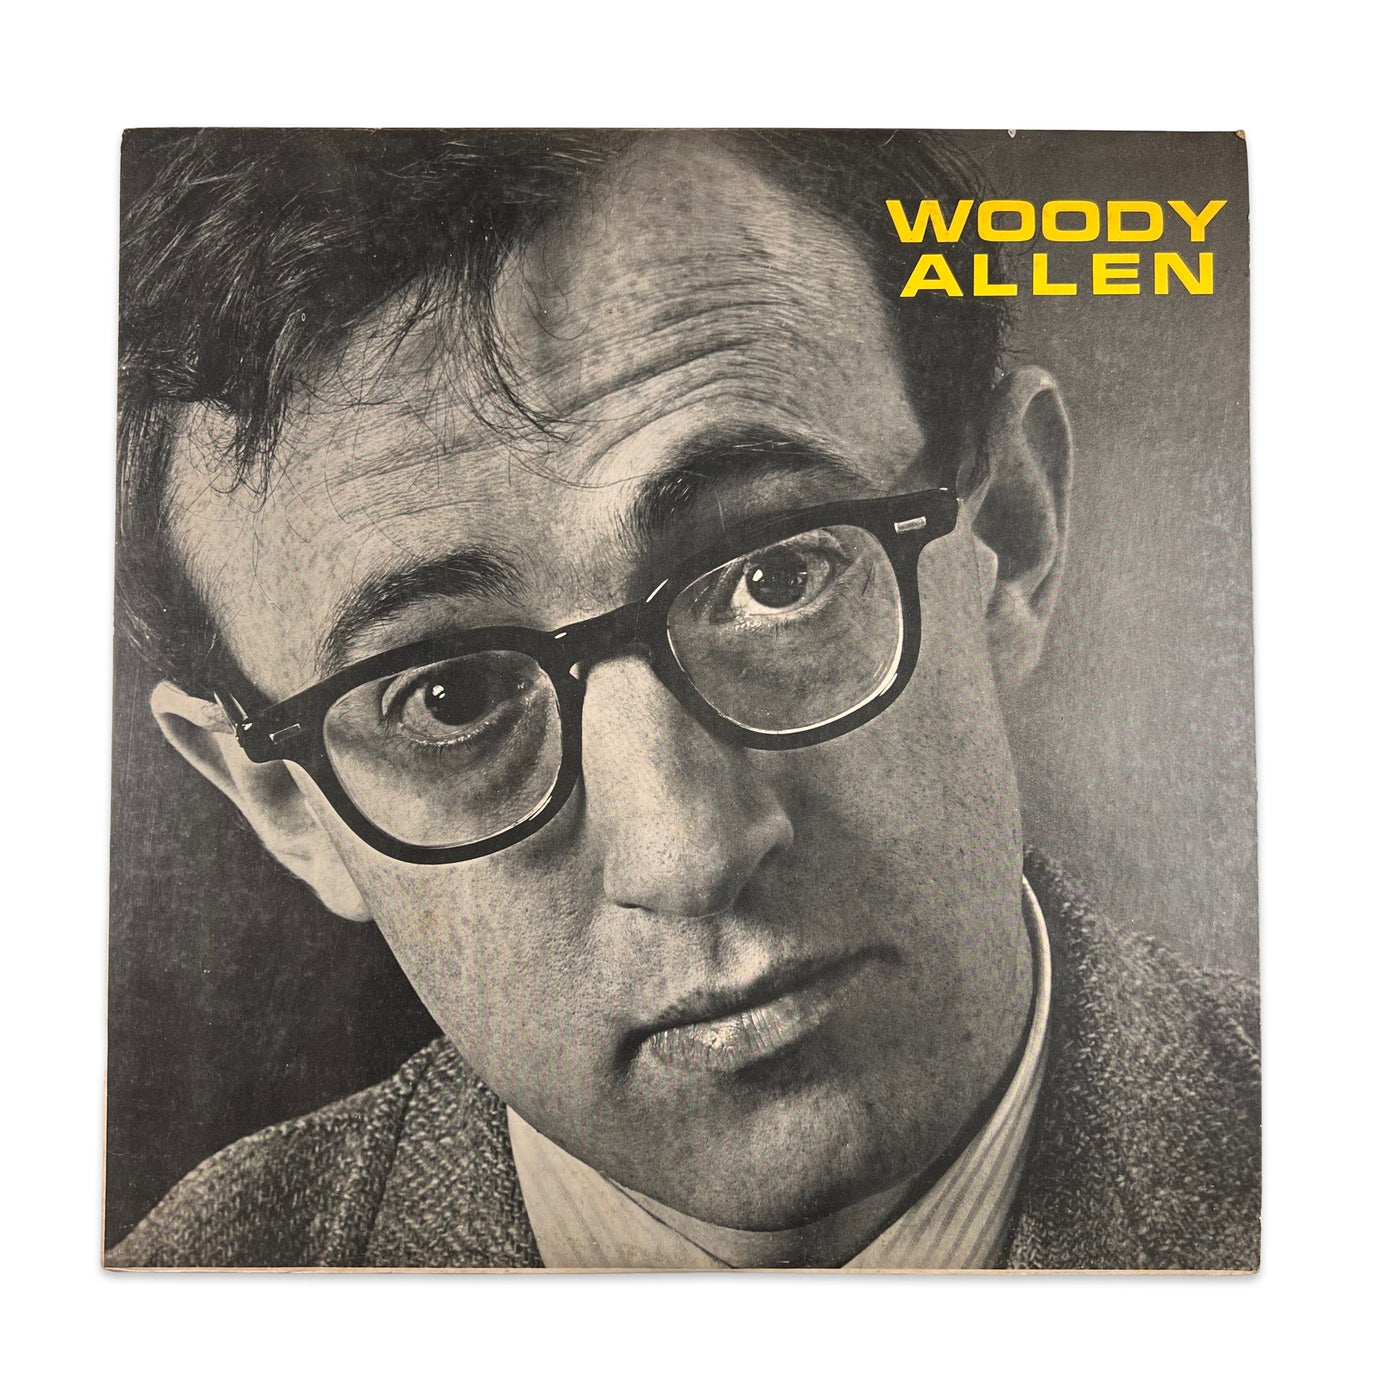 Woody Allen – Woody Allen